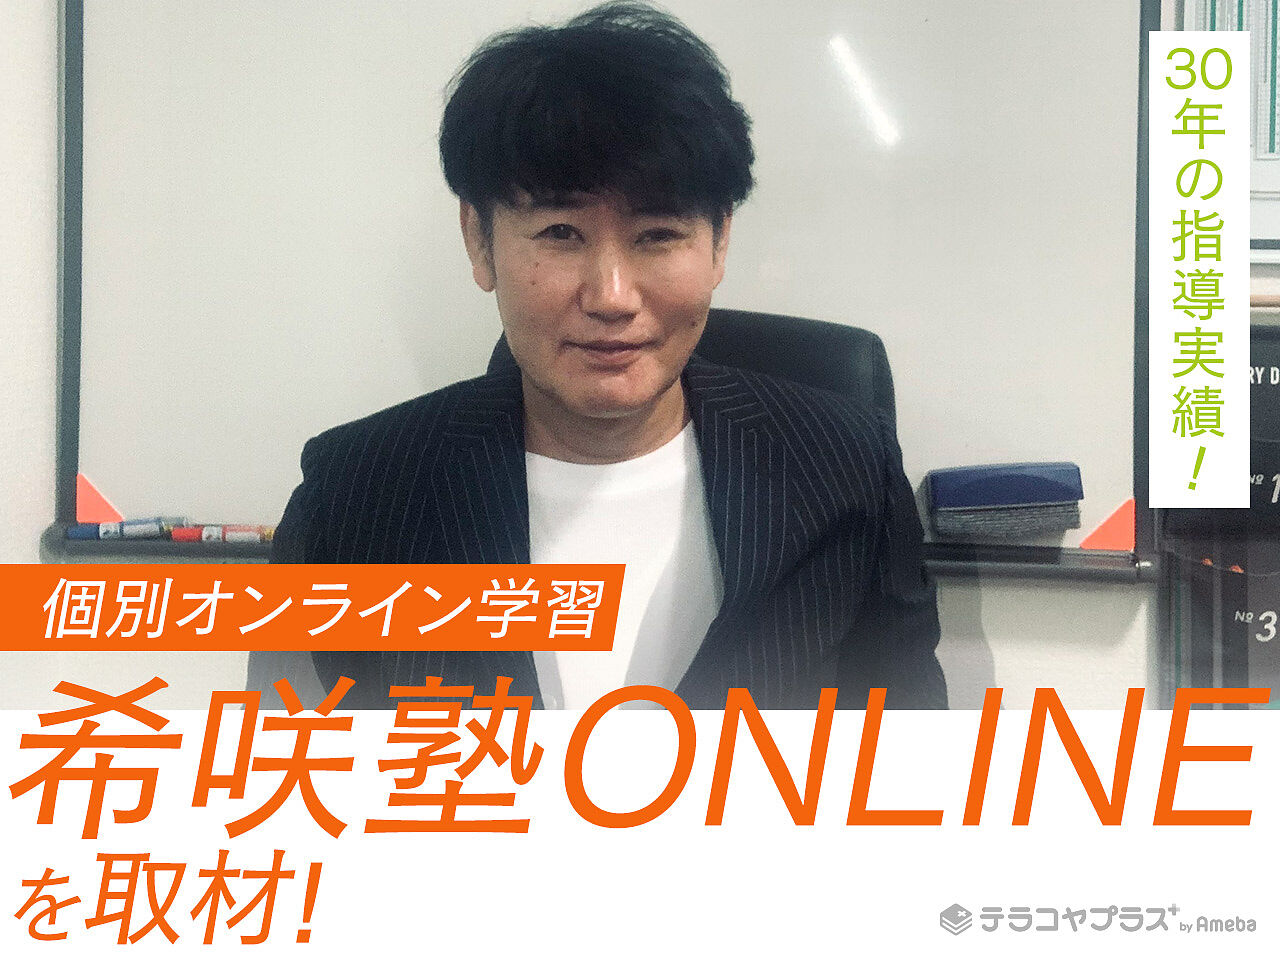 個別オンライン学習「希咲塾ONLINE」を取材！30年の指導実績を誇るプロ講師による授業とはの画像